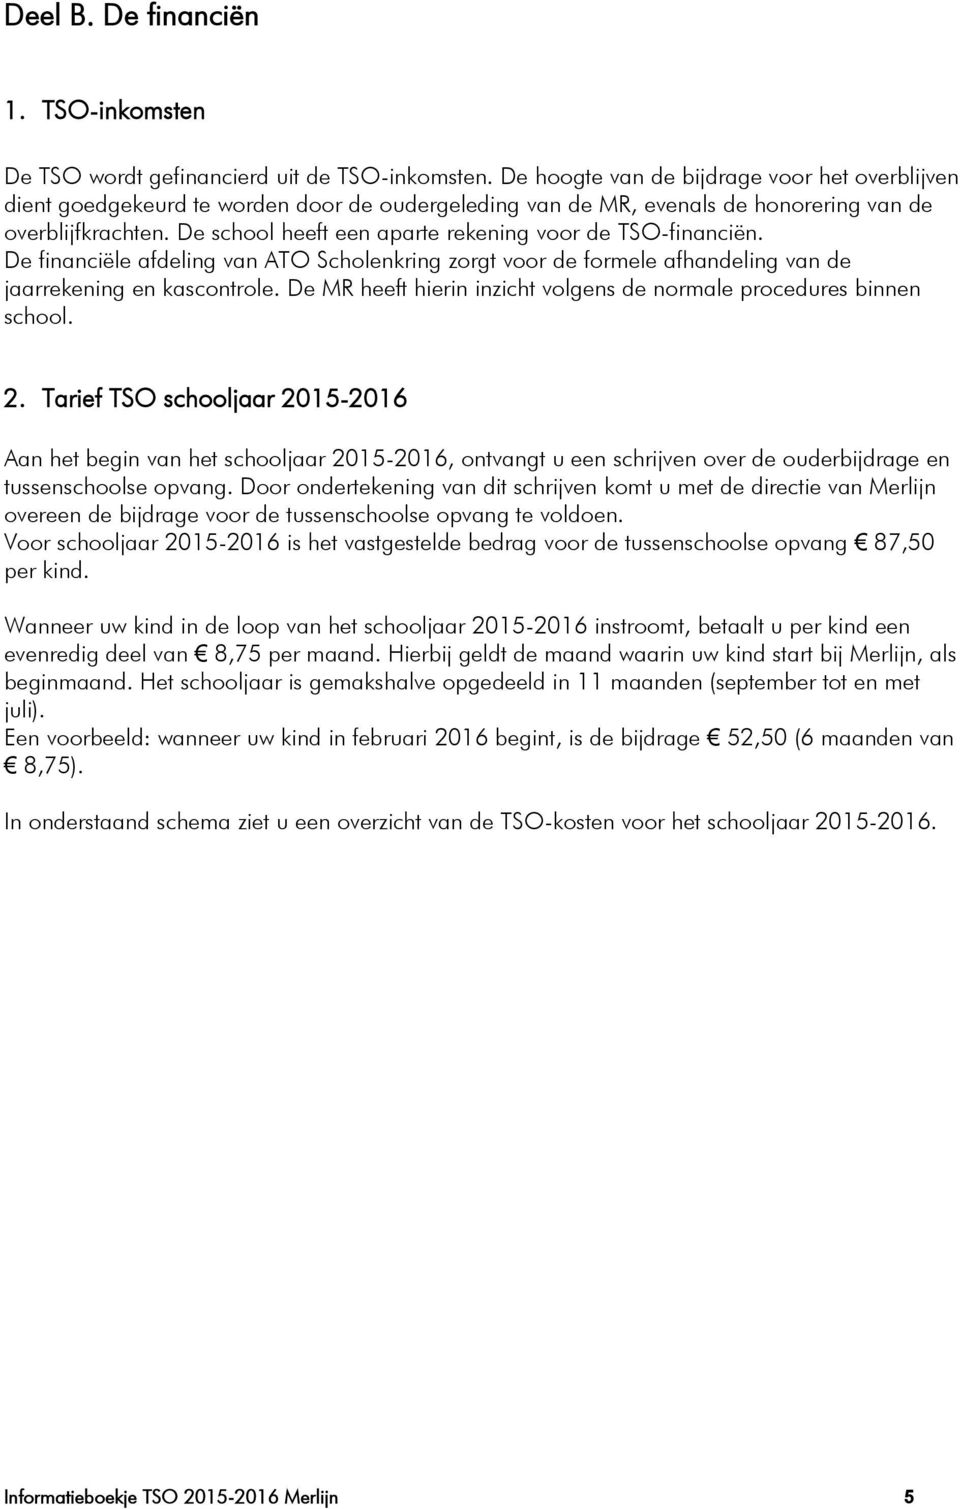 De school heeft een aparte rekening voor de TSO-financiën. De financiële afdeling van ATO Scholenkring zorgt voor de formele afhandeling van de jaarrekening en kascontrole.